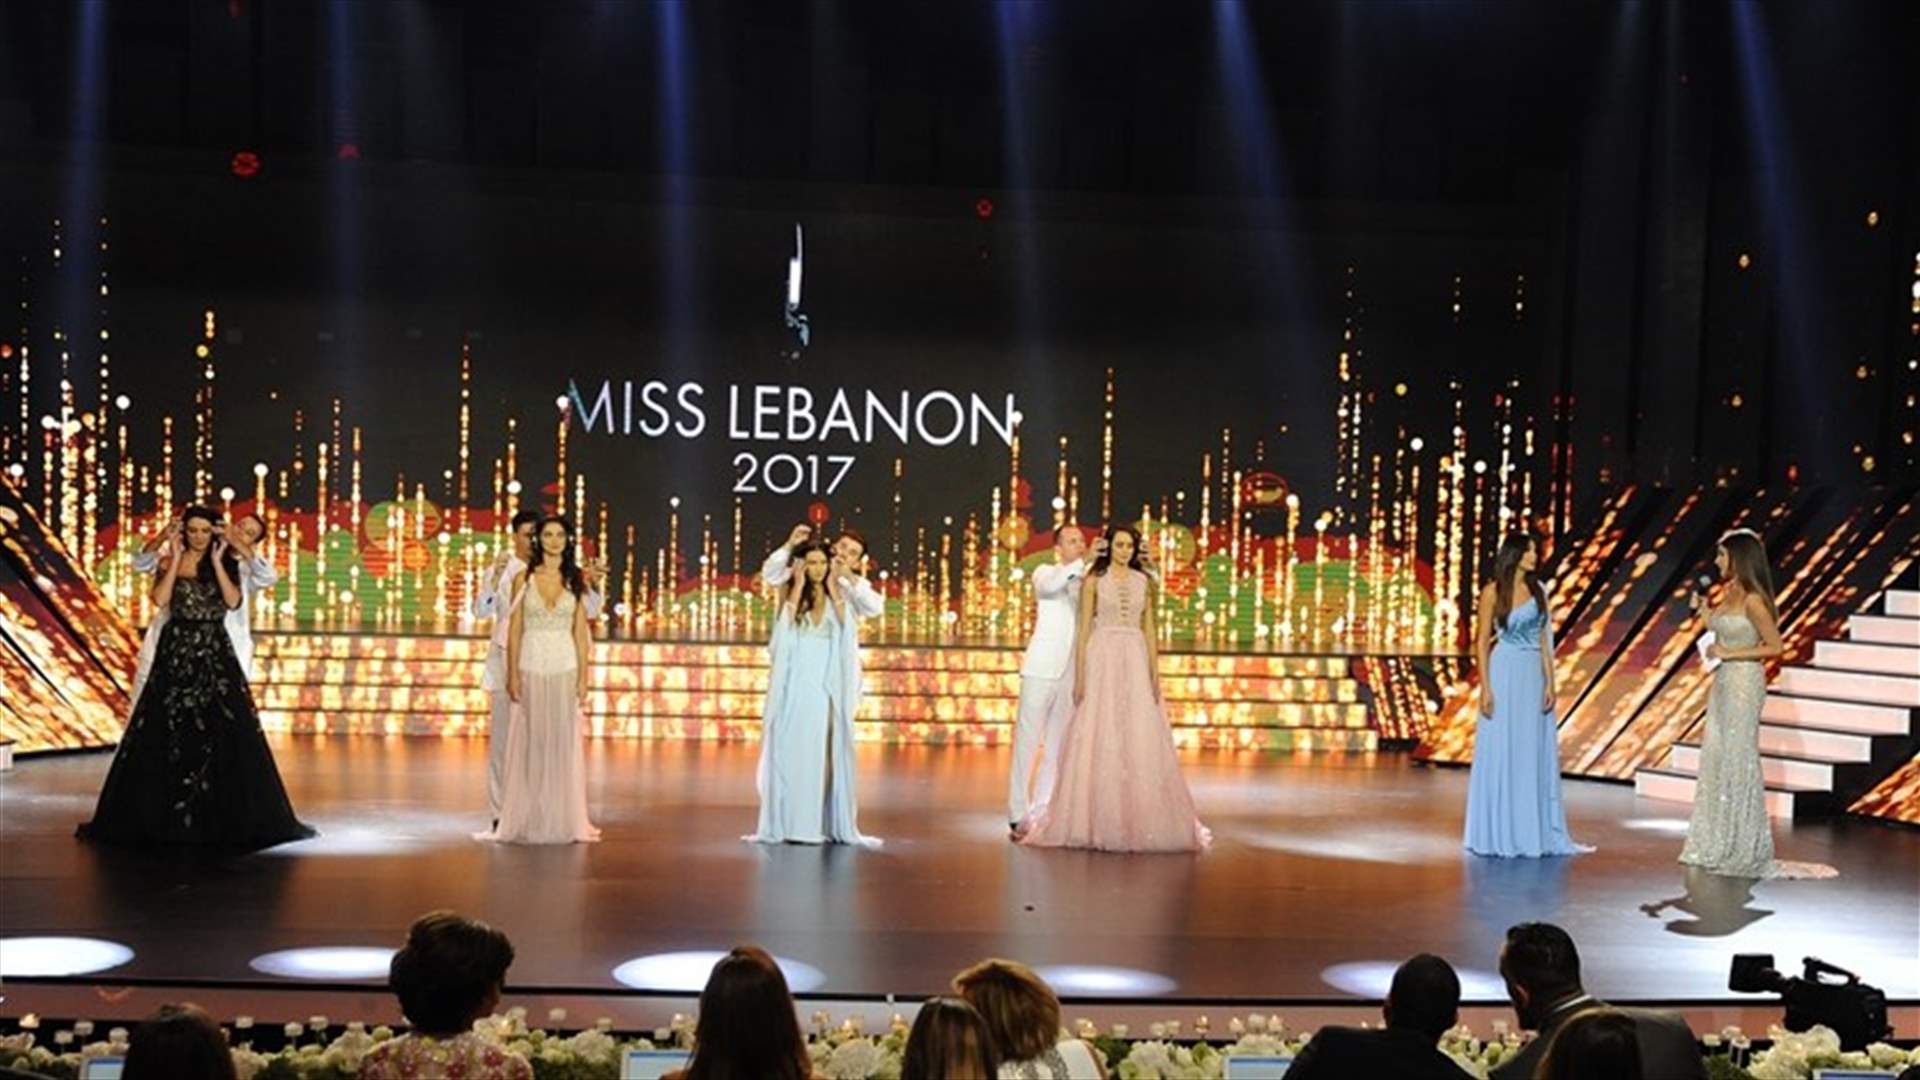 بالصورة - من هنّ المشتركات اللواتي وصلن إلى نهائيّات مسابقة ملكة جمال لبنان؟